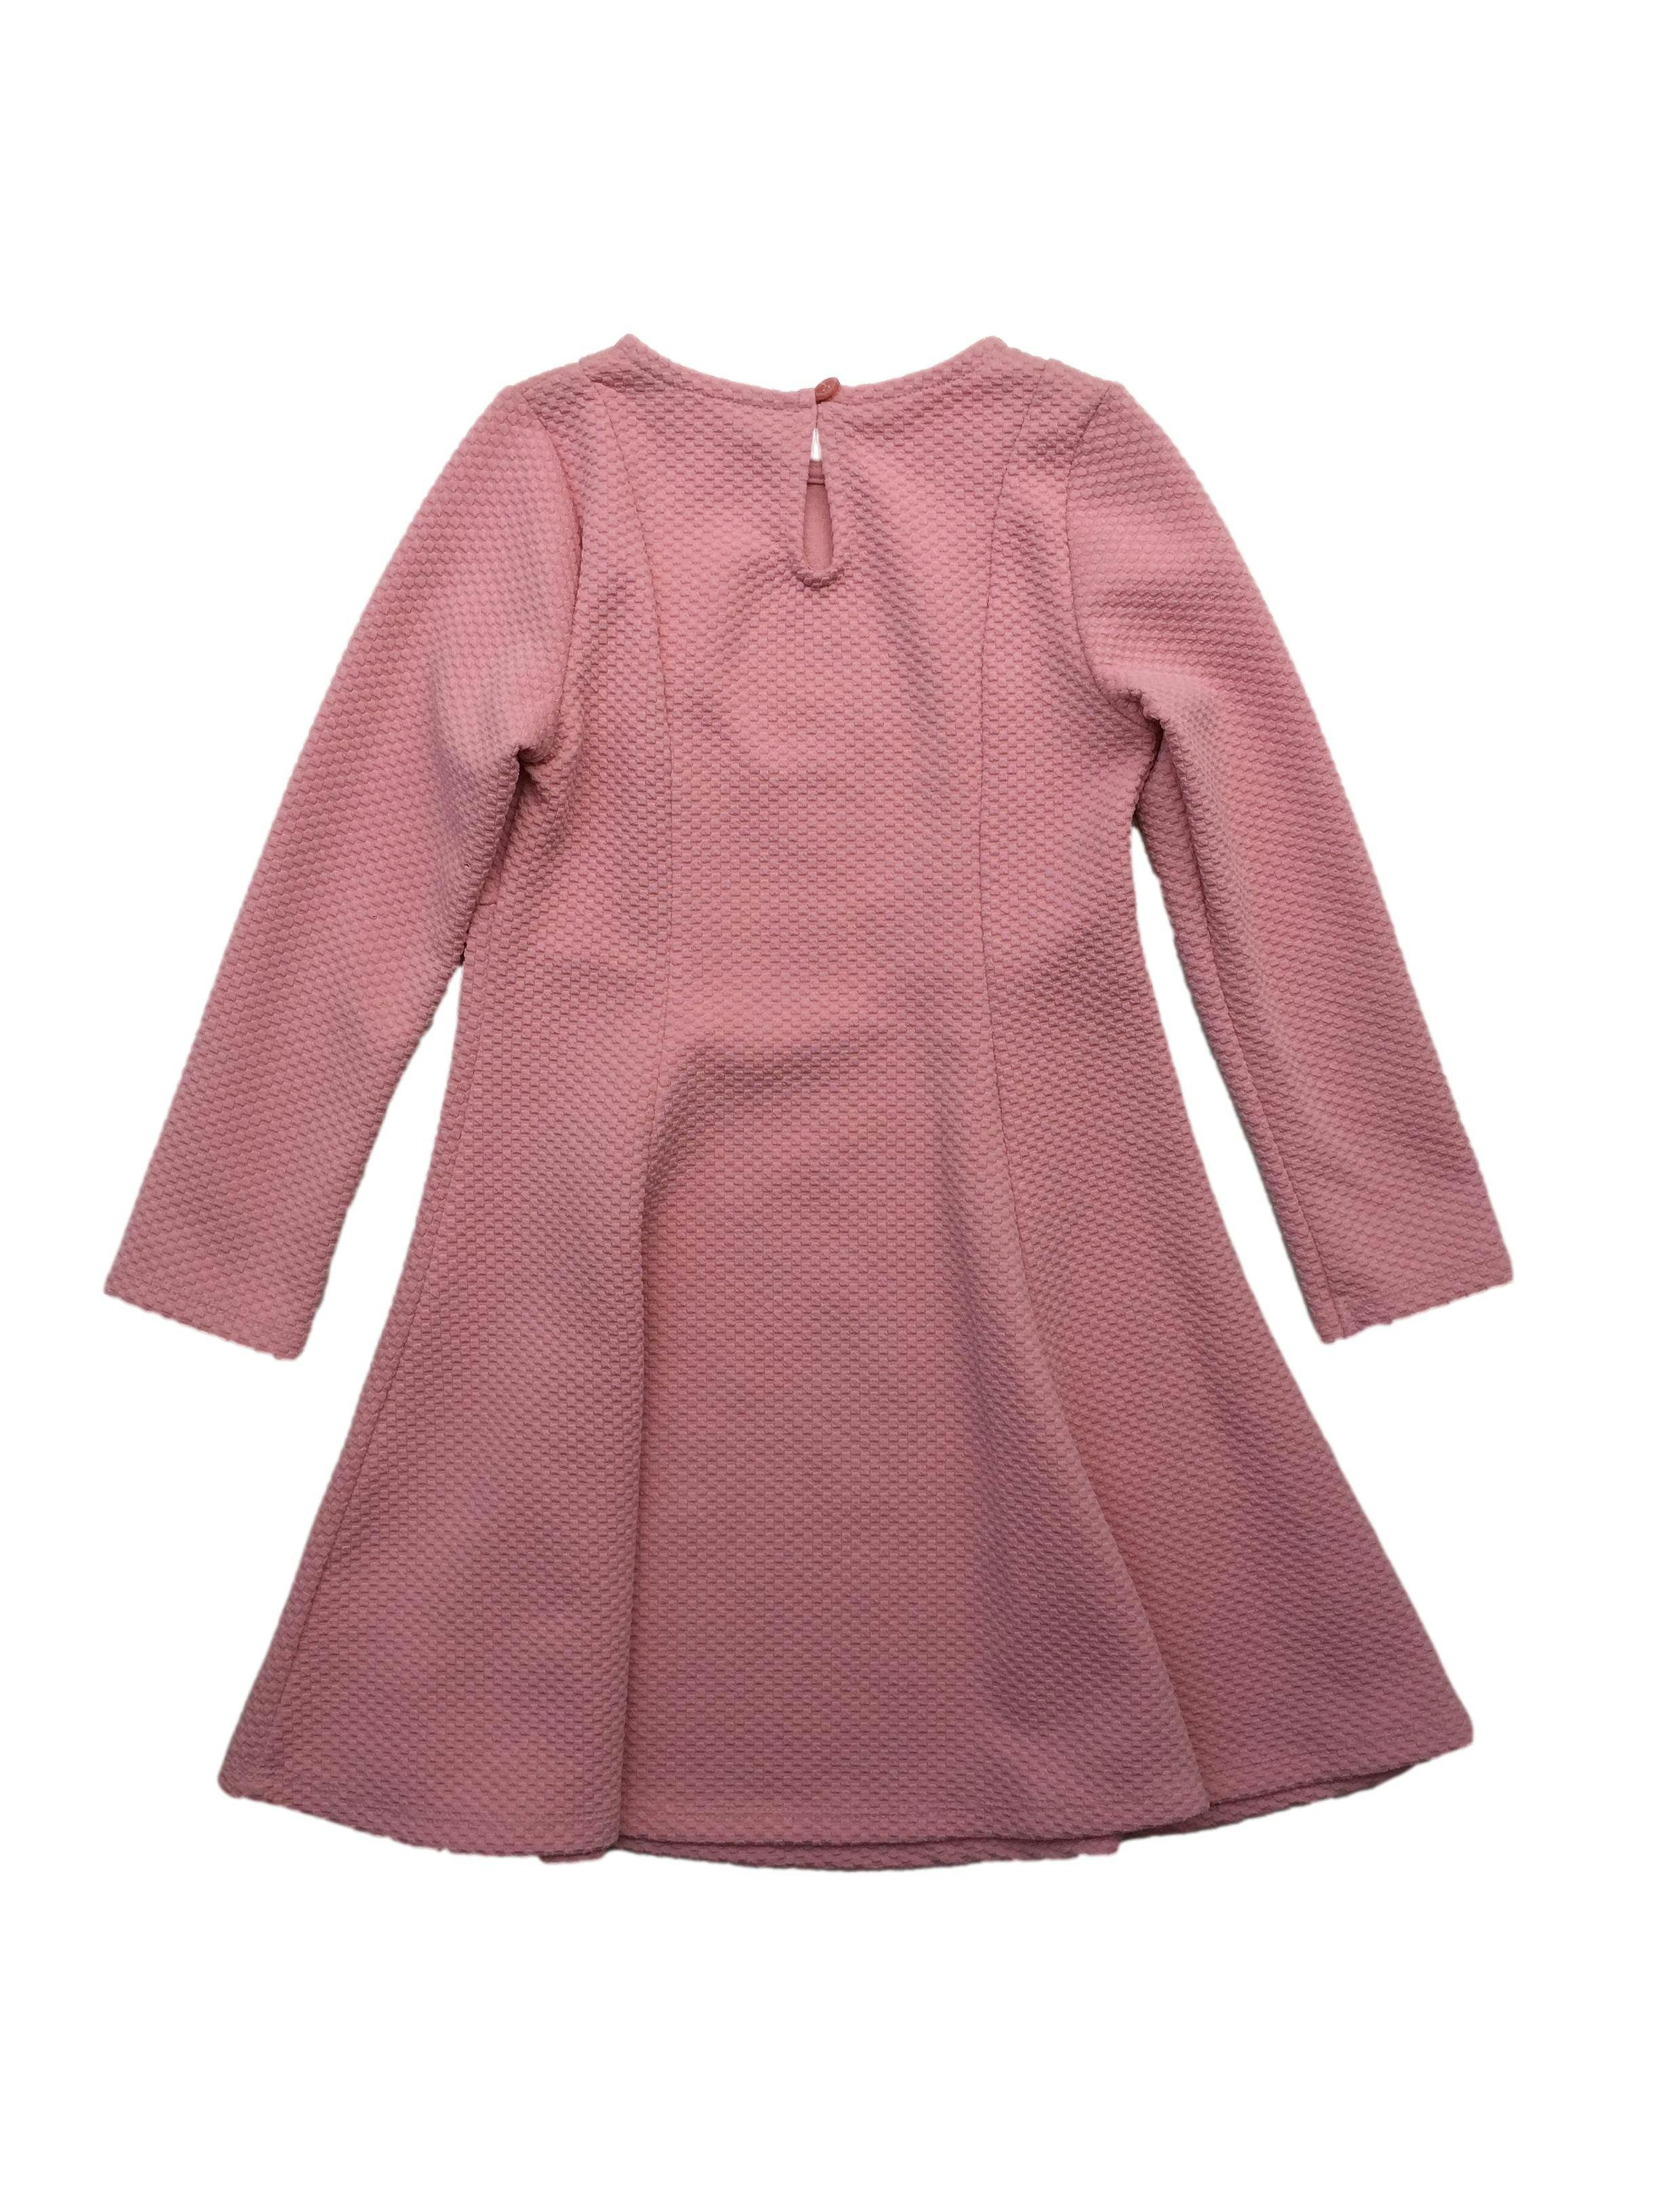 Vestido Primark rosa texturizado, corte en A, cuello redondo y abertura ojal con botón posterior.